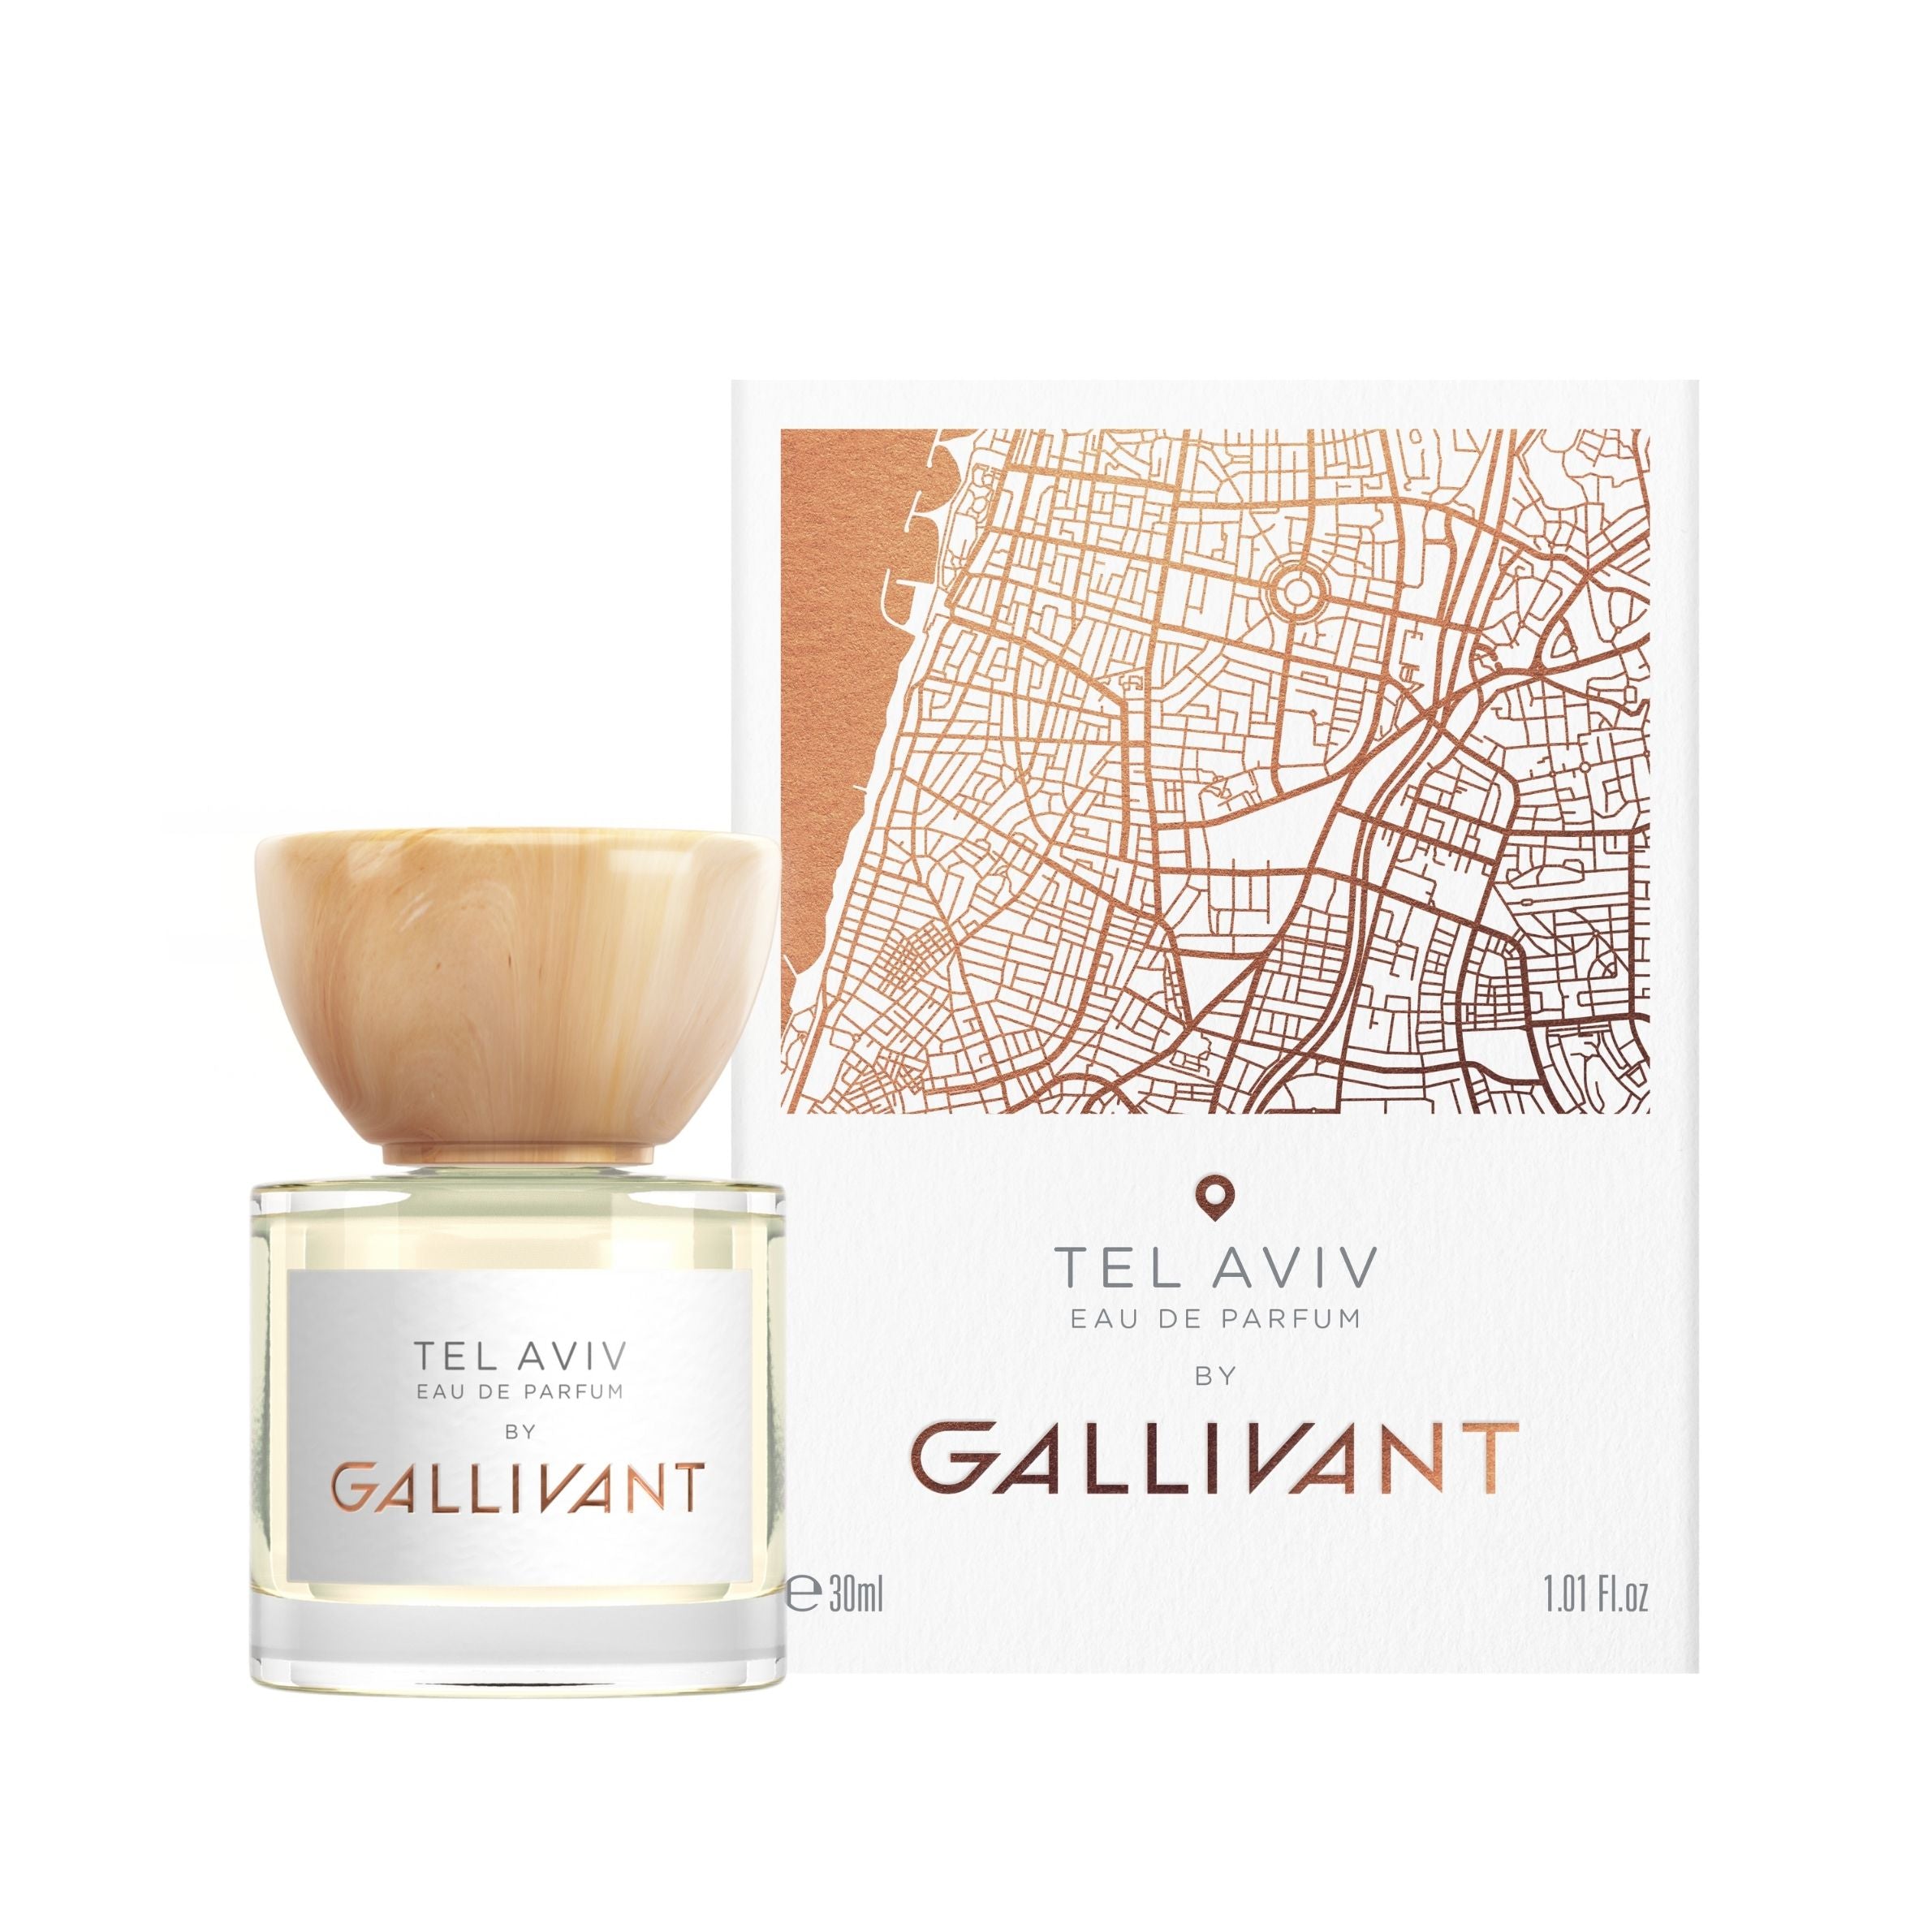 Tel Aviv 30ml Eau de Parfum Bottle and Box by Gallivant